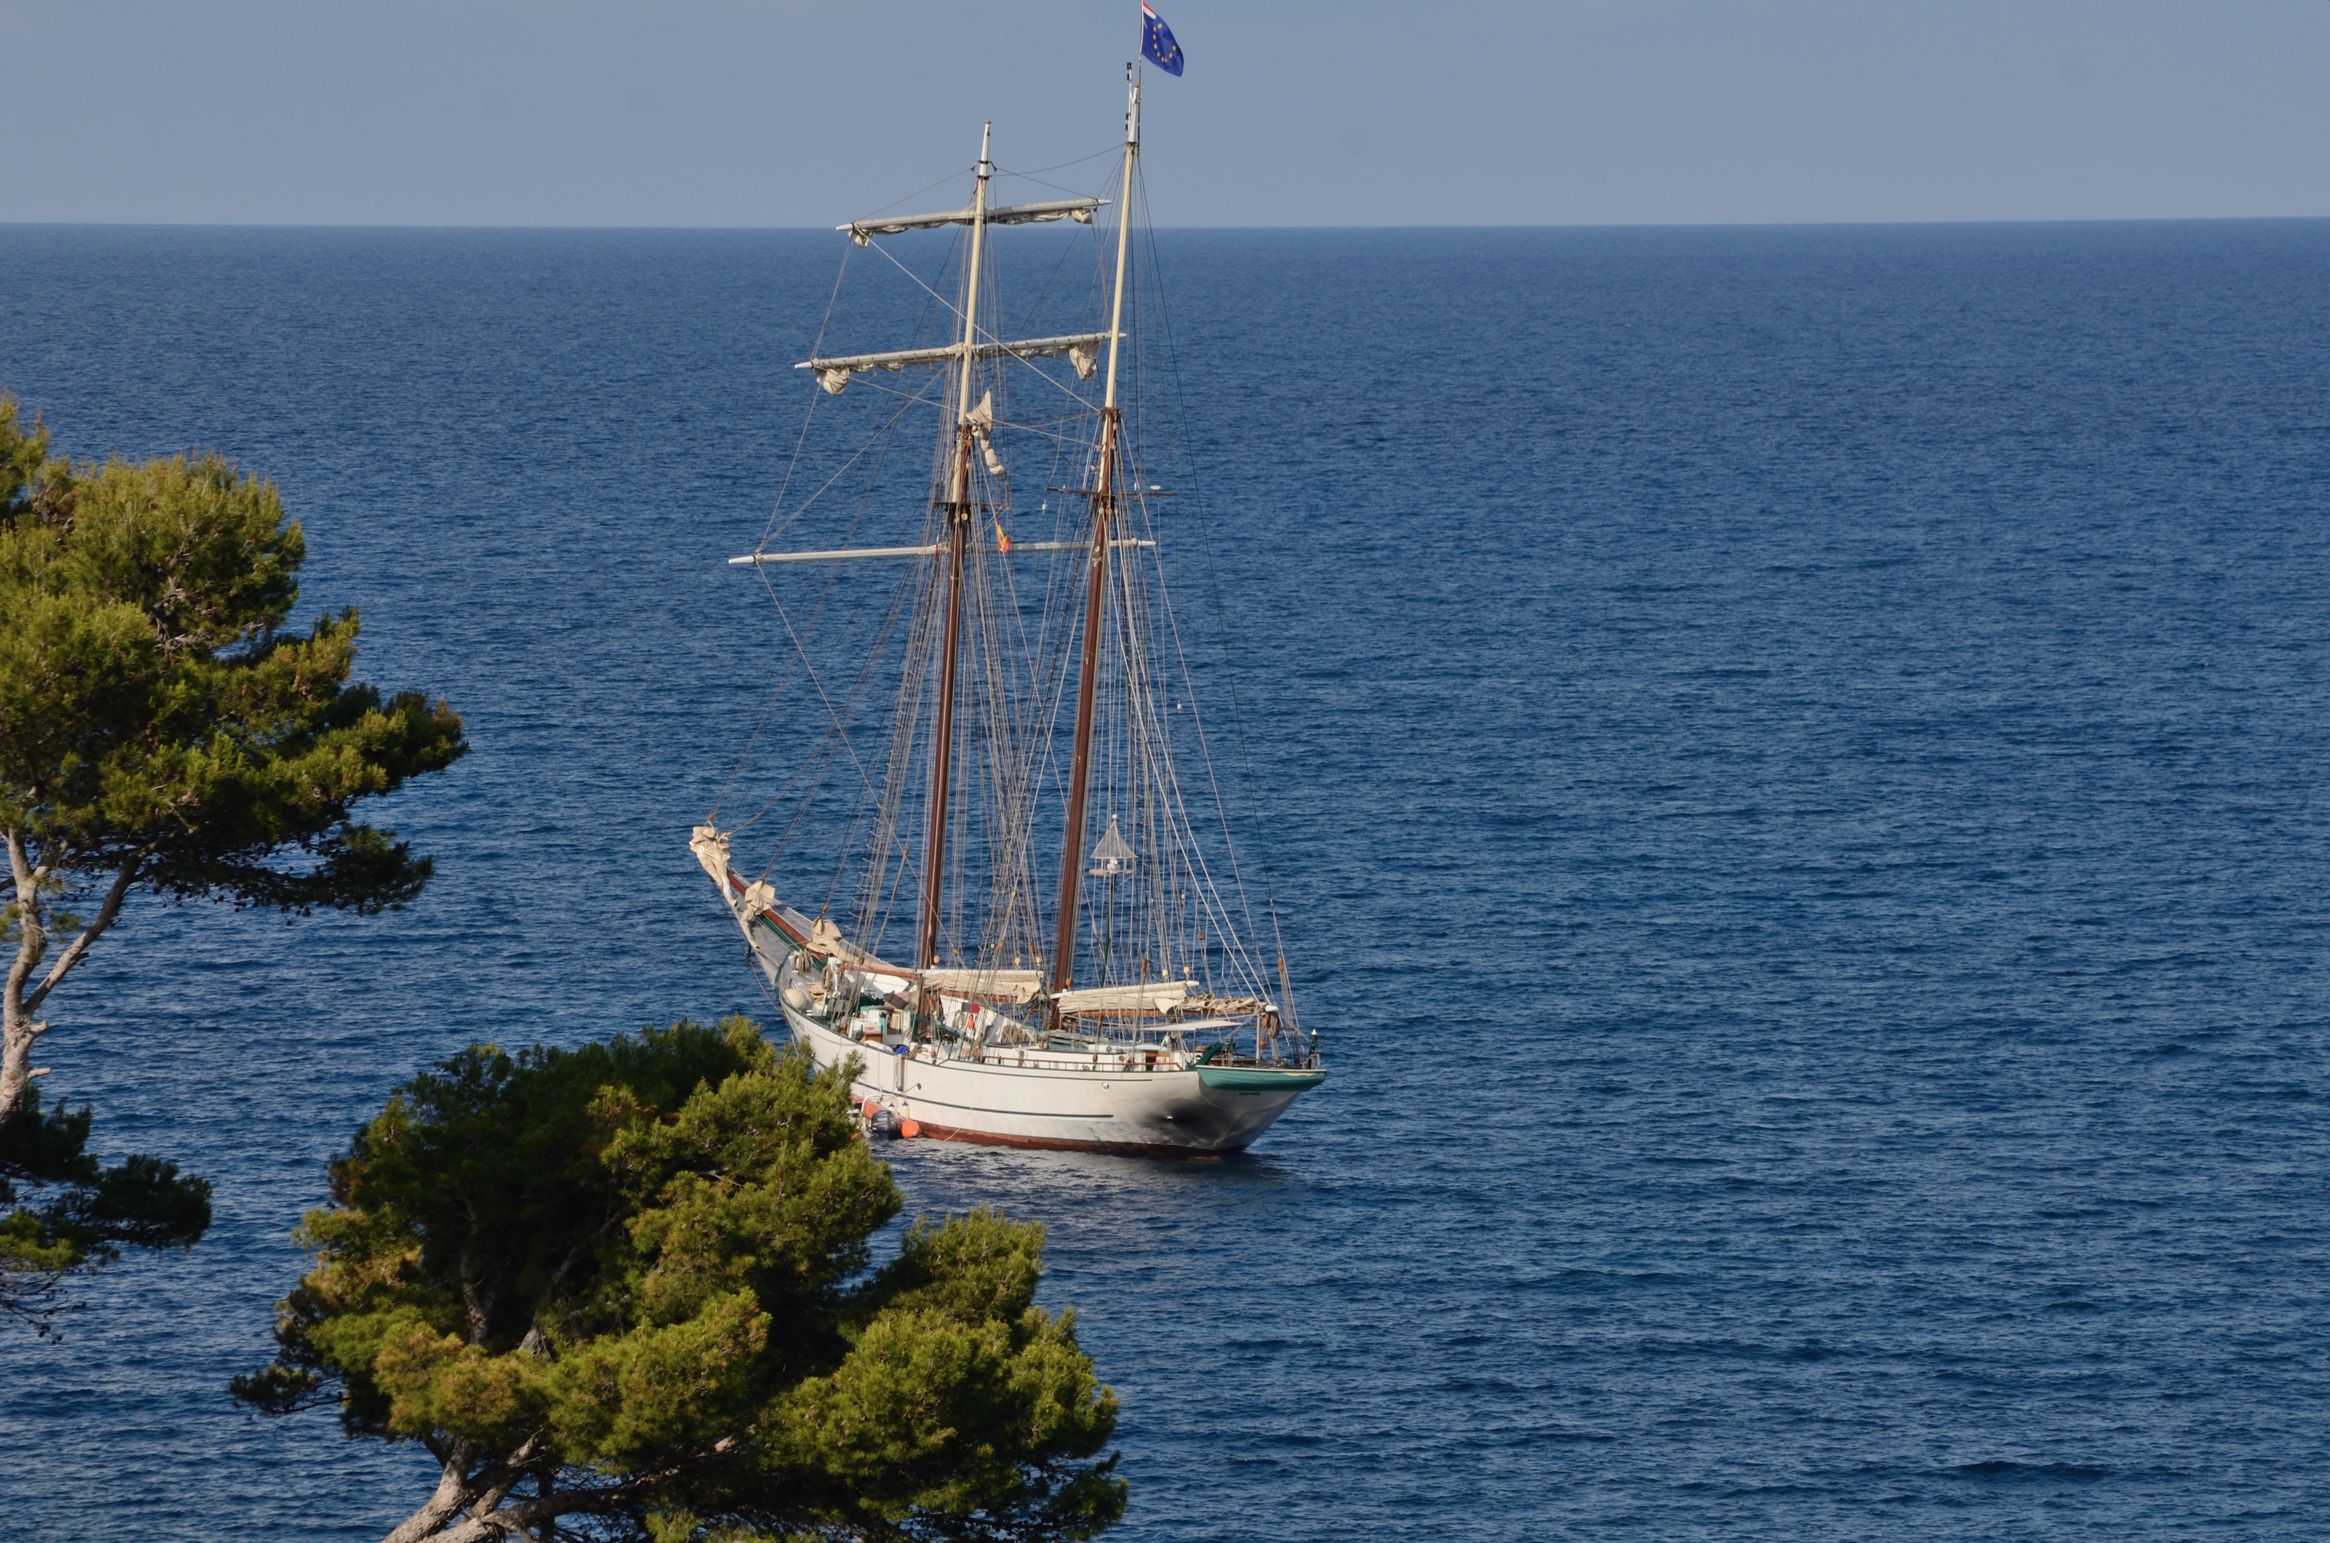 Two masted sailing ship